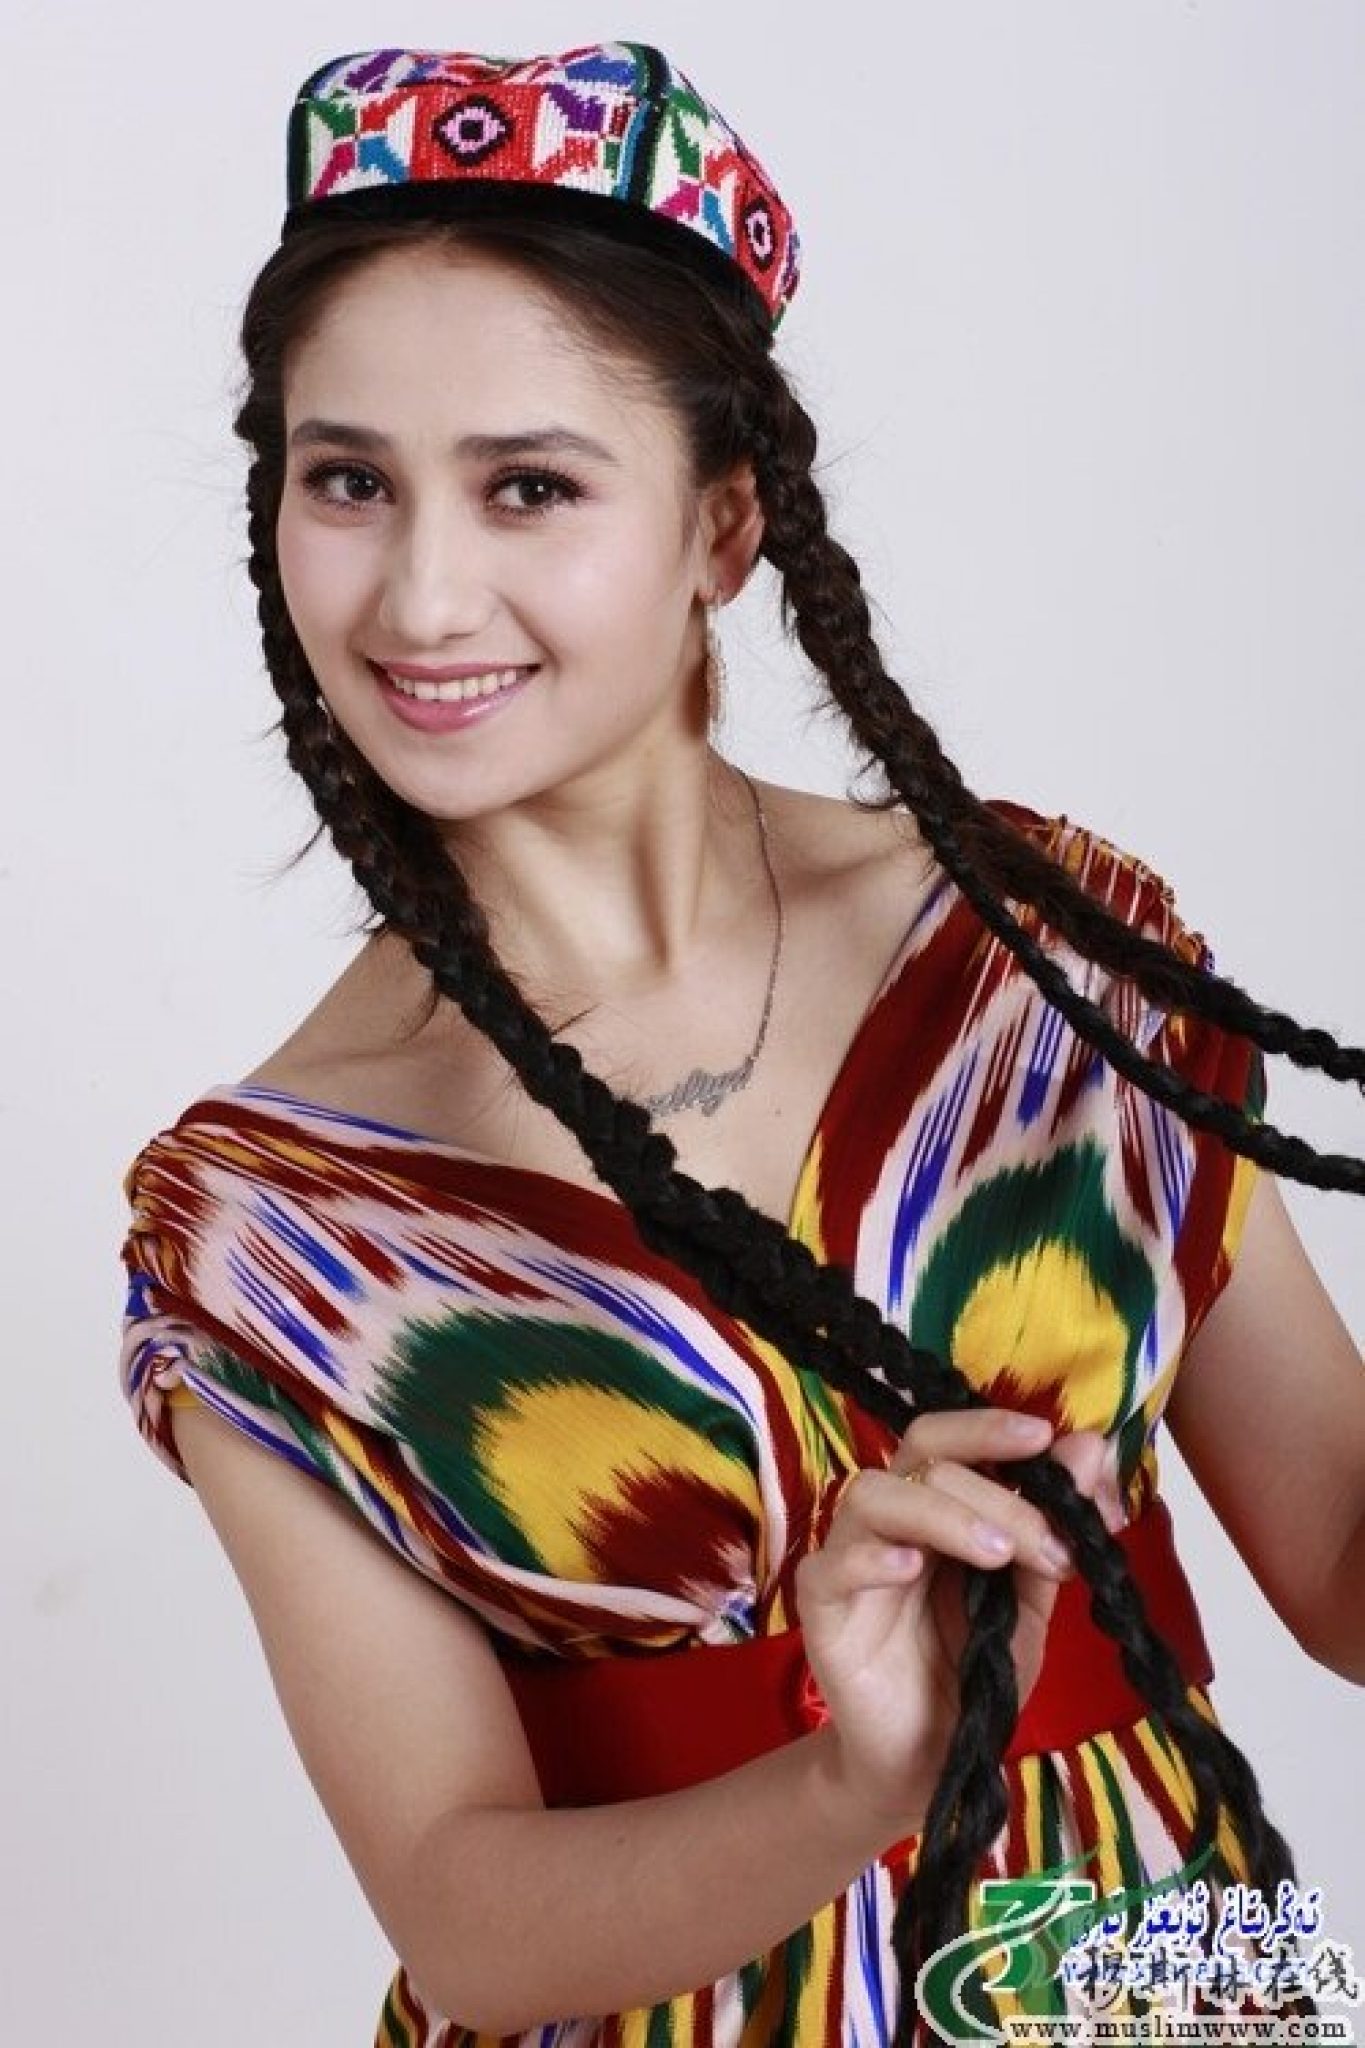 Узбечка таджичка. Уйгурка Mahire Emet. Уйгурка. Mahire Emet (танцовщица). Махире Эмет. Надира уйгурка.